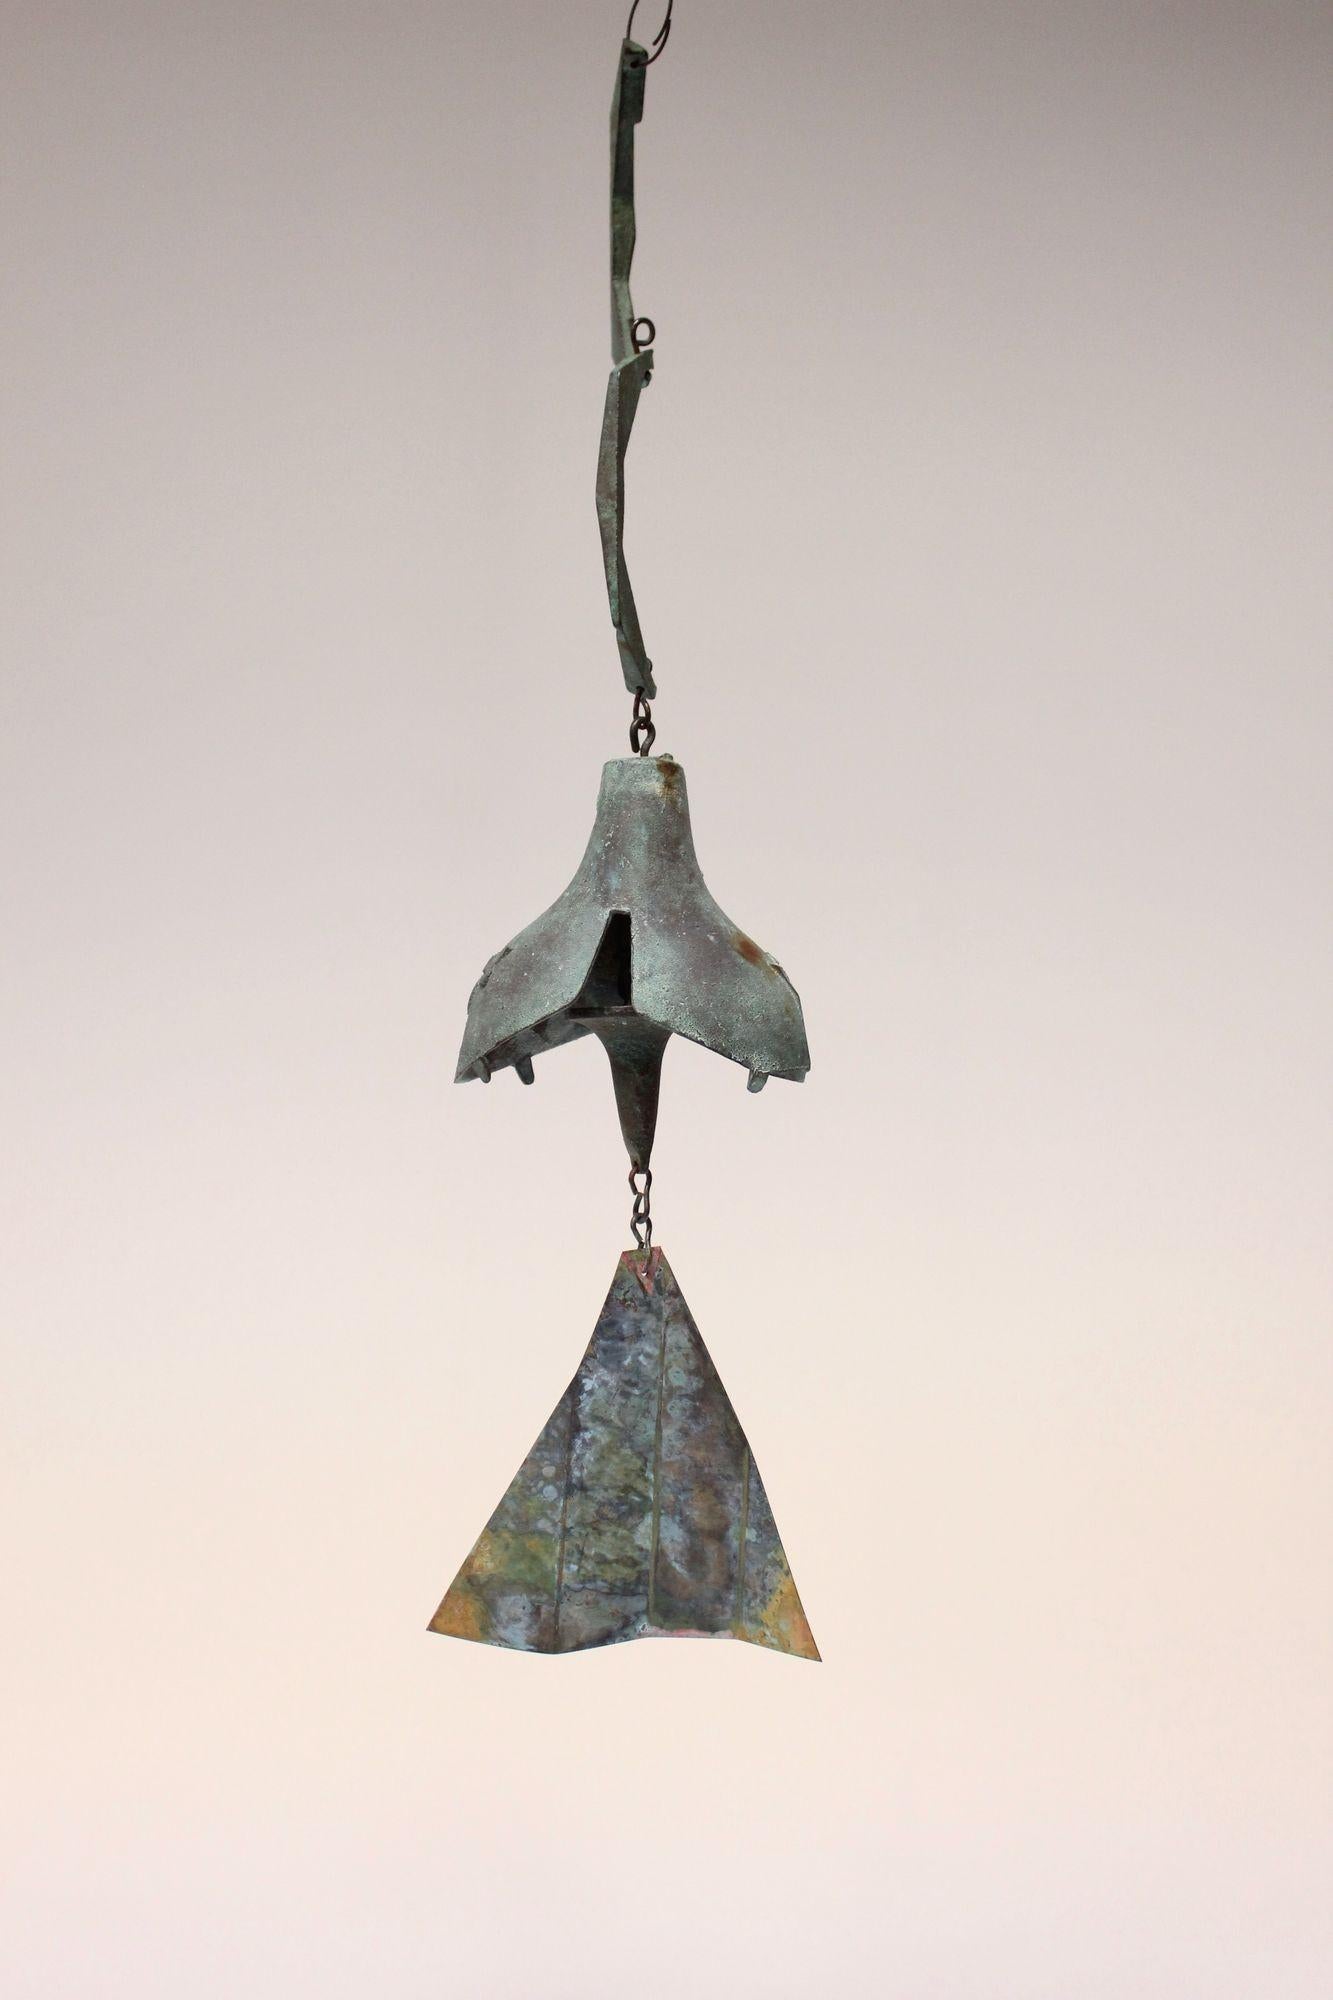 Carillon/cloche à vent conçu par l'architecte Paolo Soleri pour Arconsanti (la ville qu'il a conçue et construite en Arizona en 1970).
Éléments moulés en bronze avec patine vert-de-gris et aileron pigmenté multicolore. Une production précoce avec